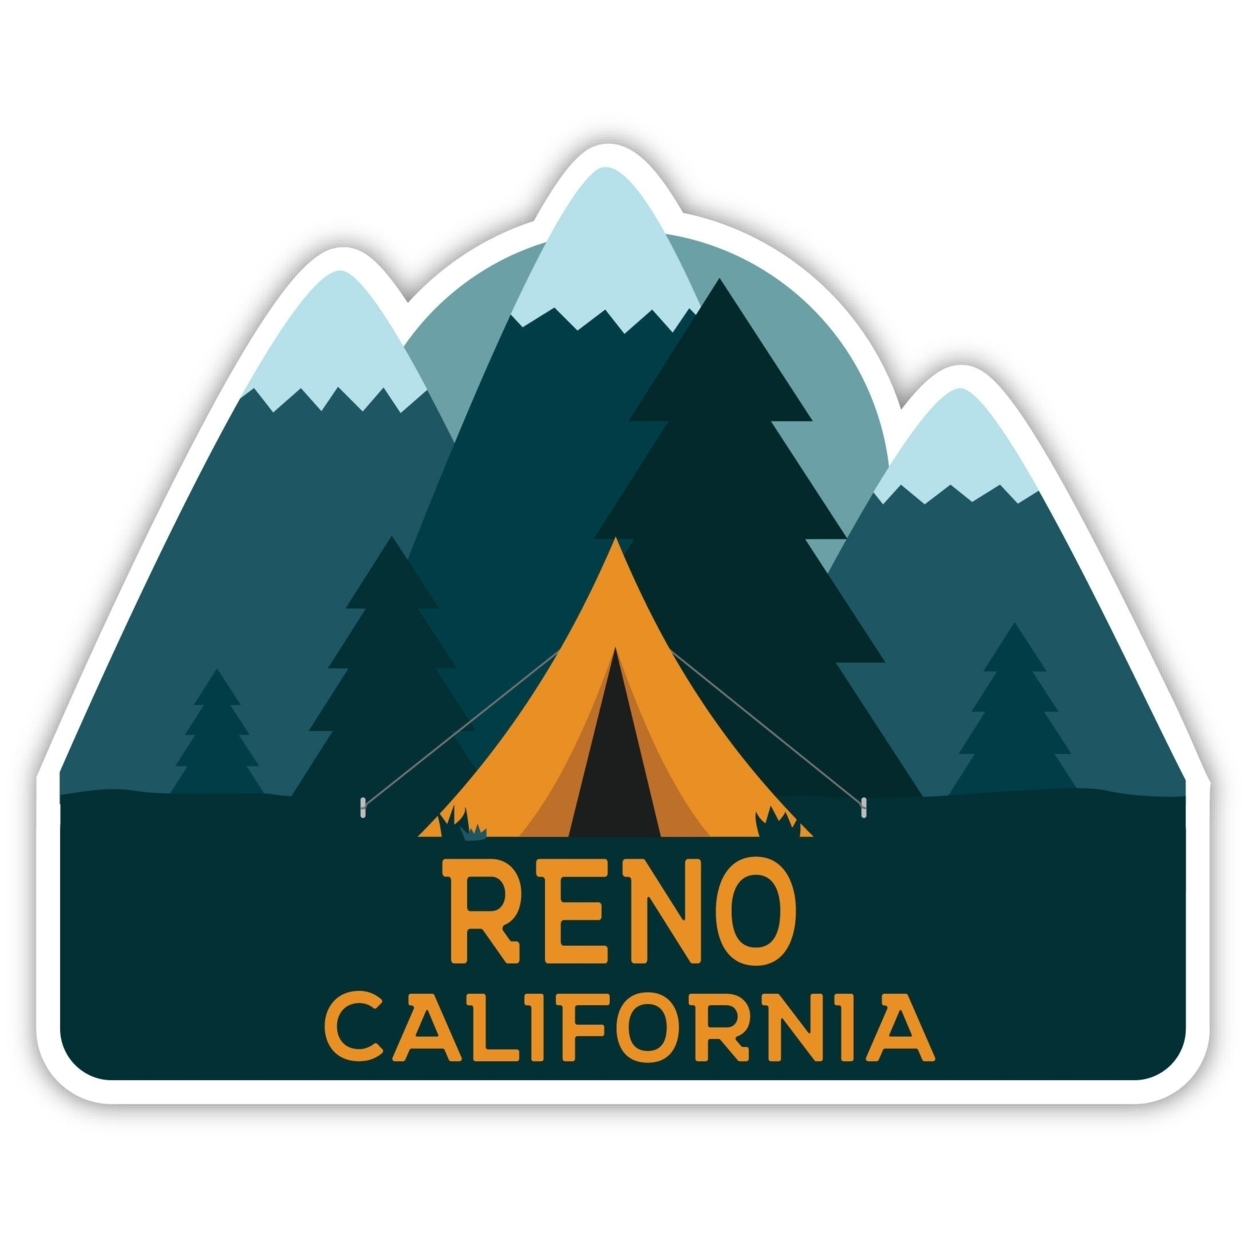 Reno California Souvenir Decorative Stickers (Choose Theme And Size) - Single Unit, 4-Inch, Tent